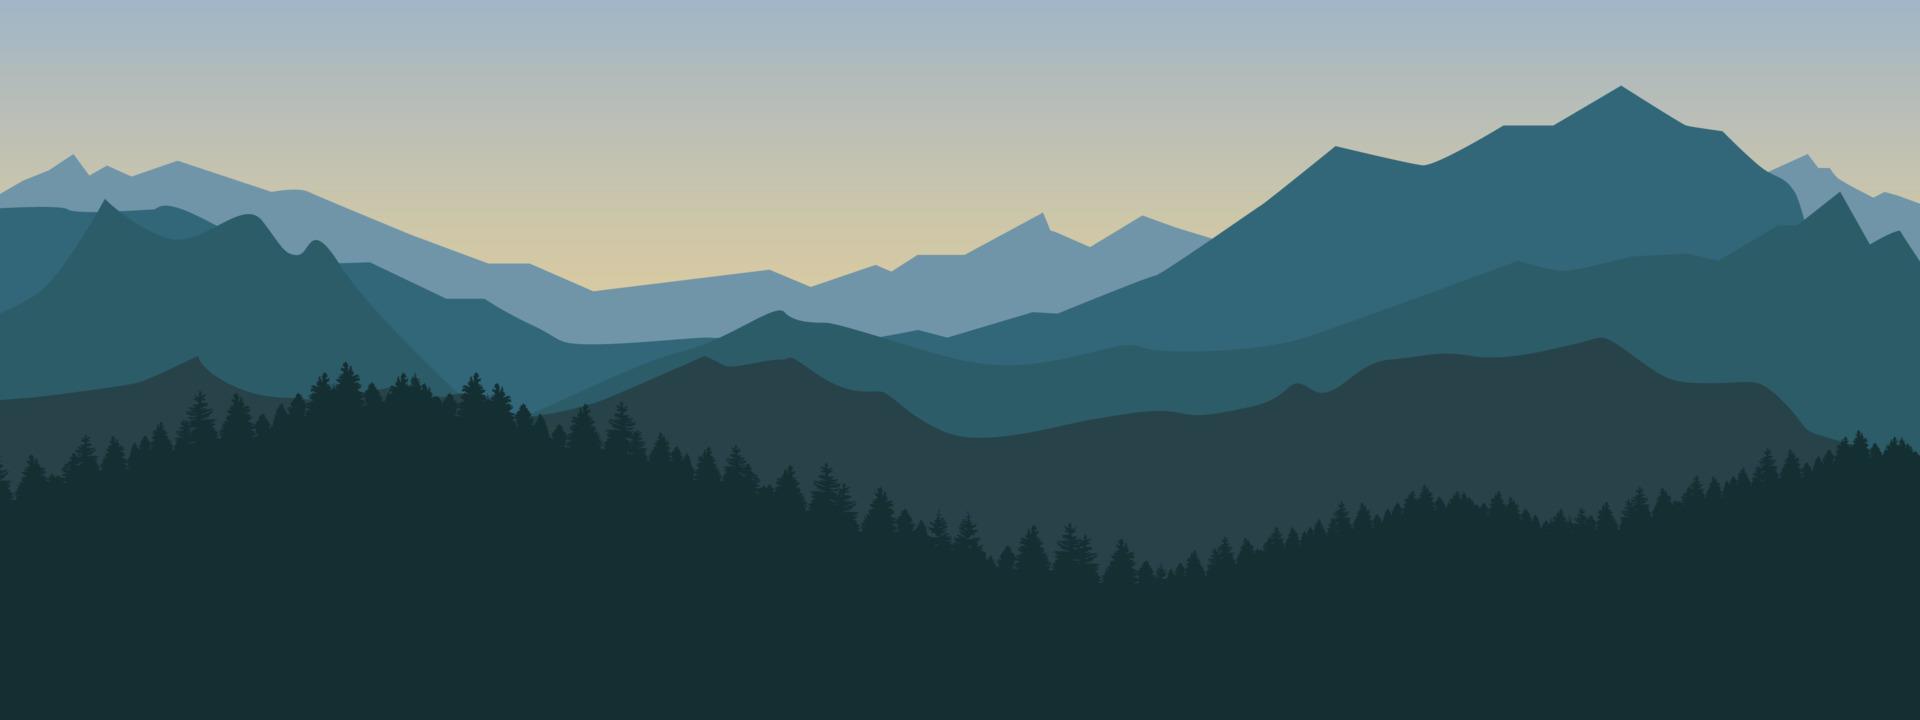 berg och skog landskap illustration i gryning och skymning vektor